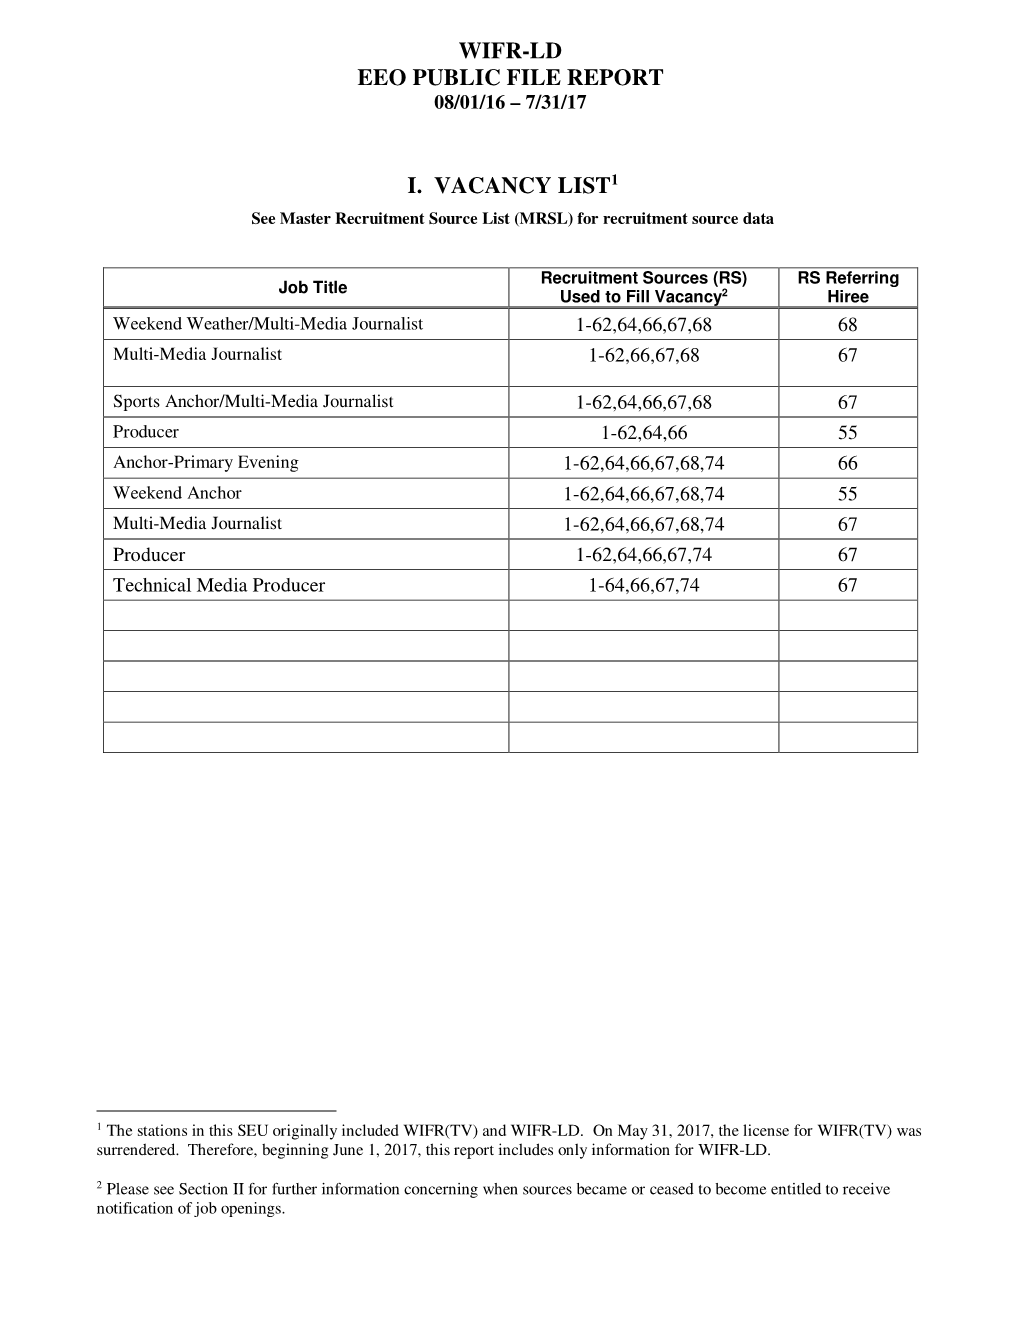 Wifr-Ld Eeo Public File Report I. Vacancy List1